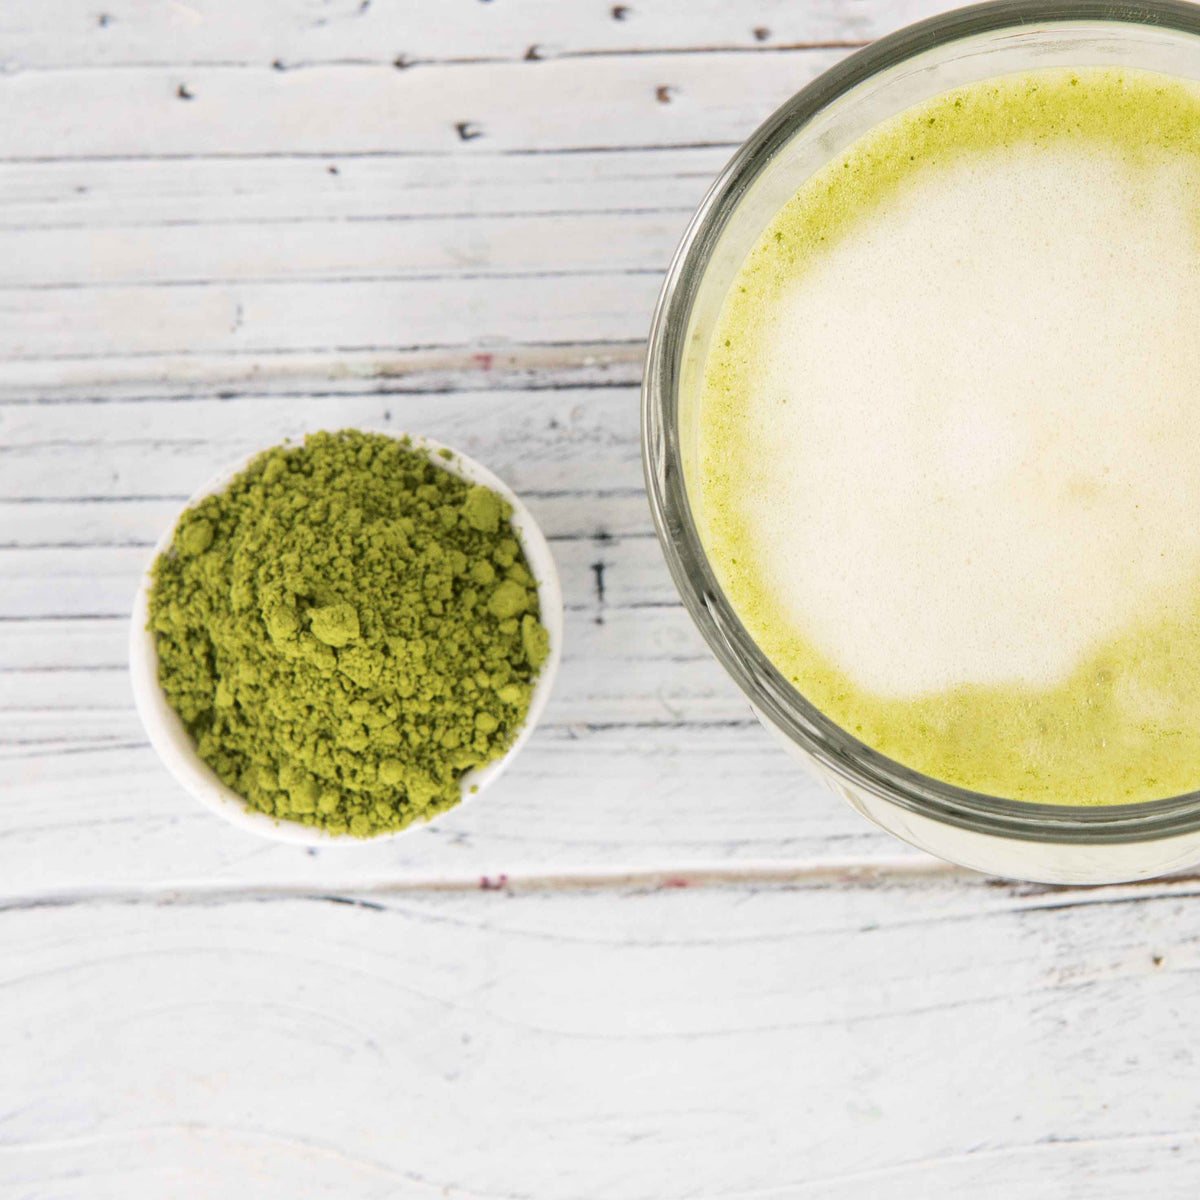 How to make matcha green tea - thehappygreenteacup